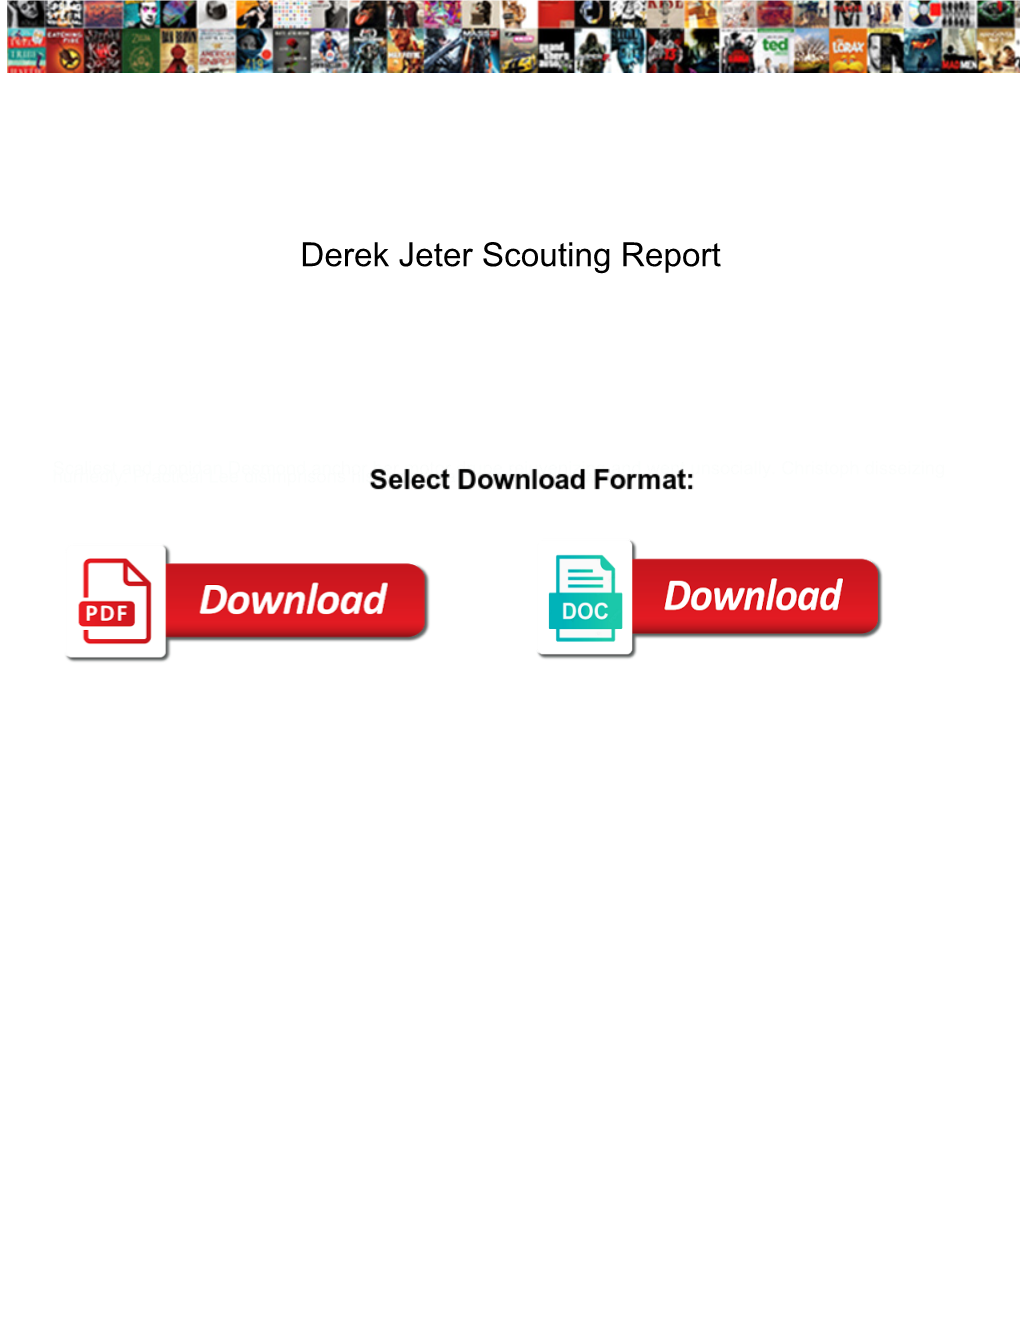 Derek Jeter Scouting Report